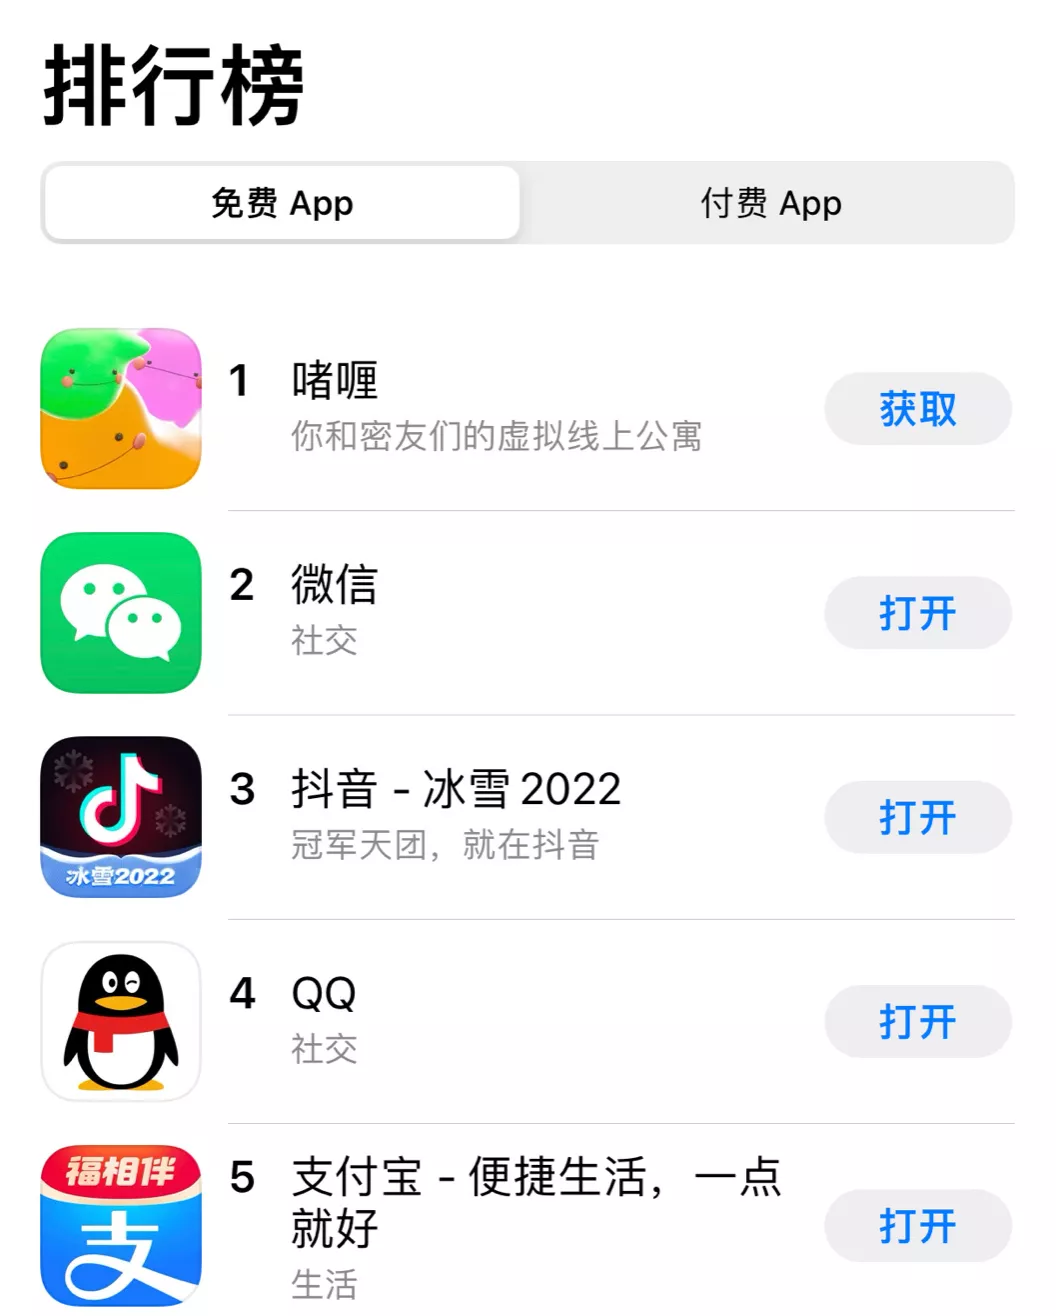 超越微信，這國產App啫喱憑什麼登上榜單第一？ 交友軟體 第1張